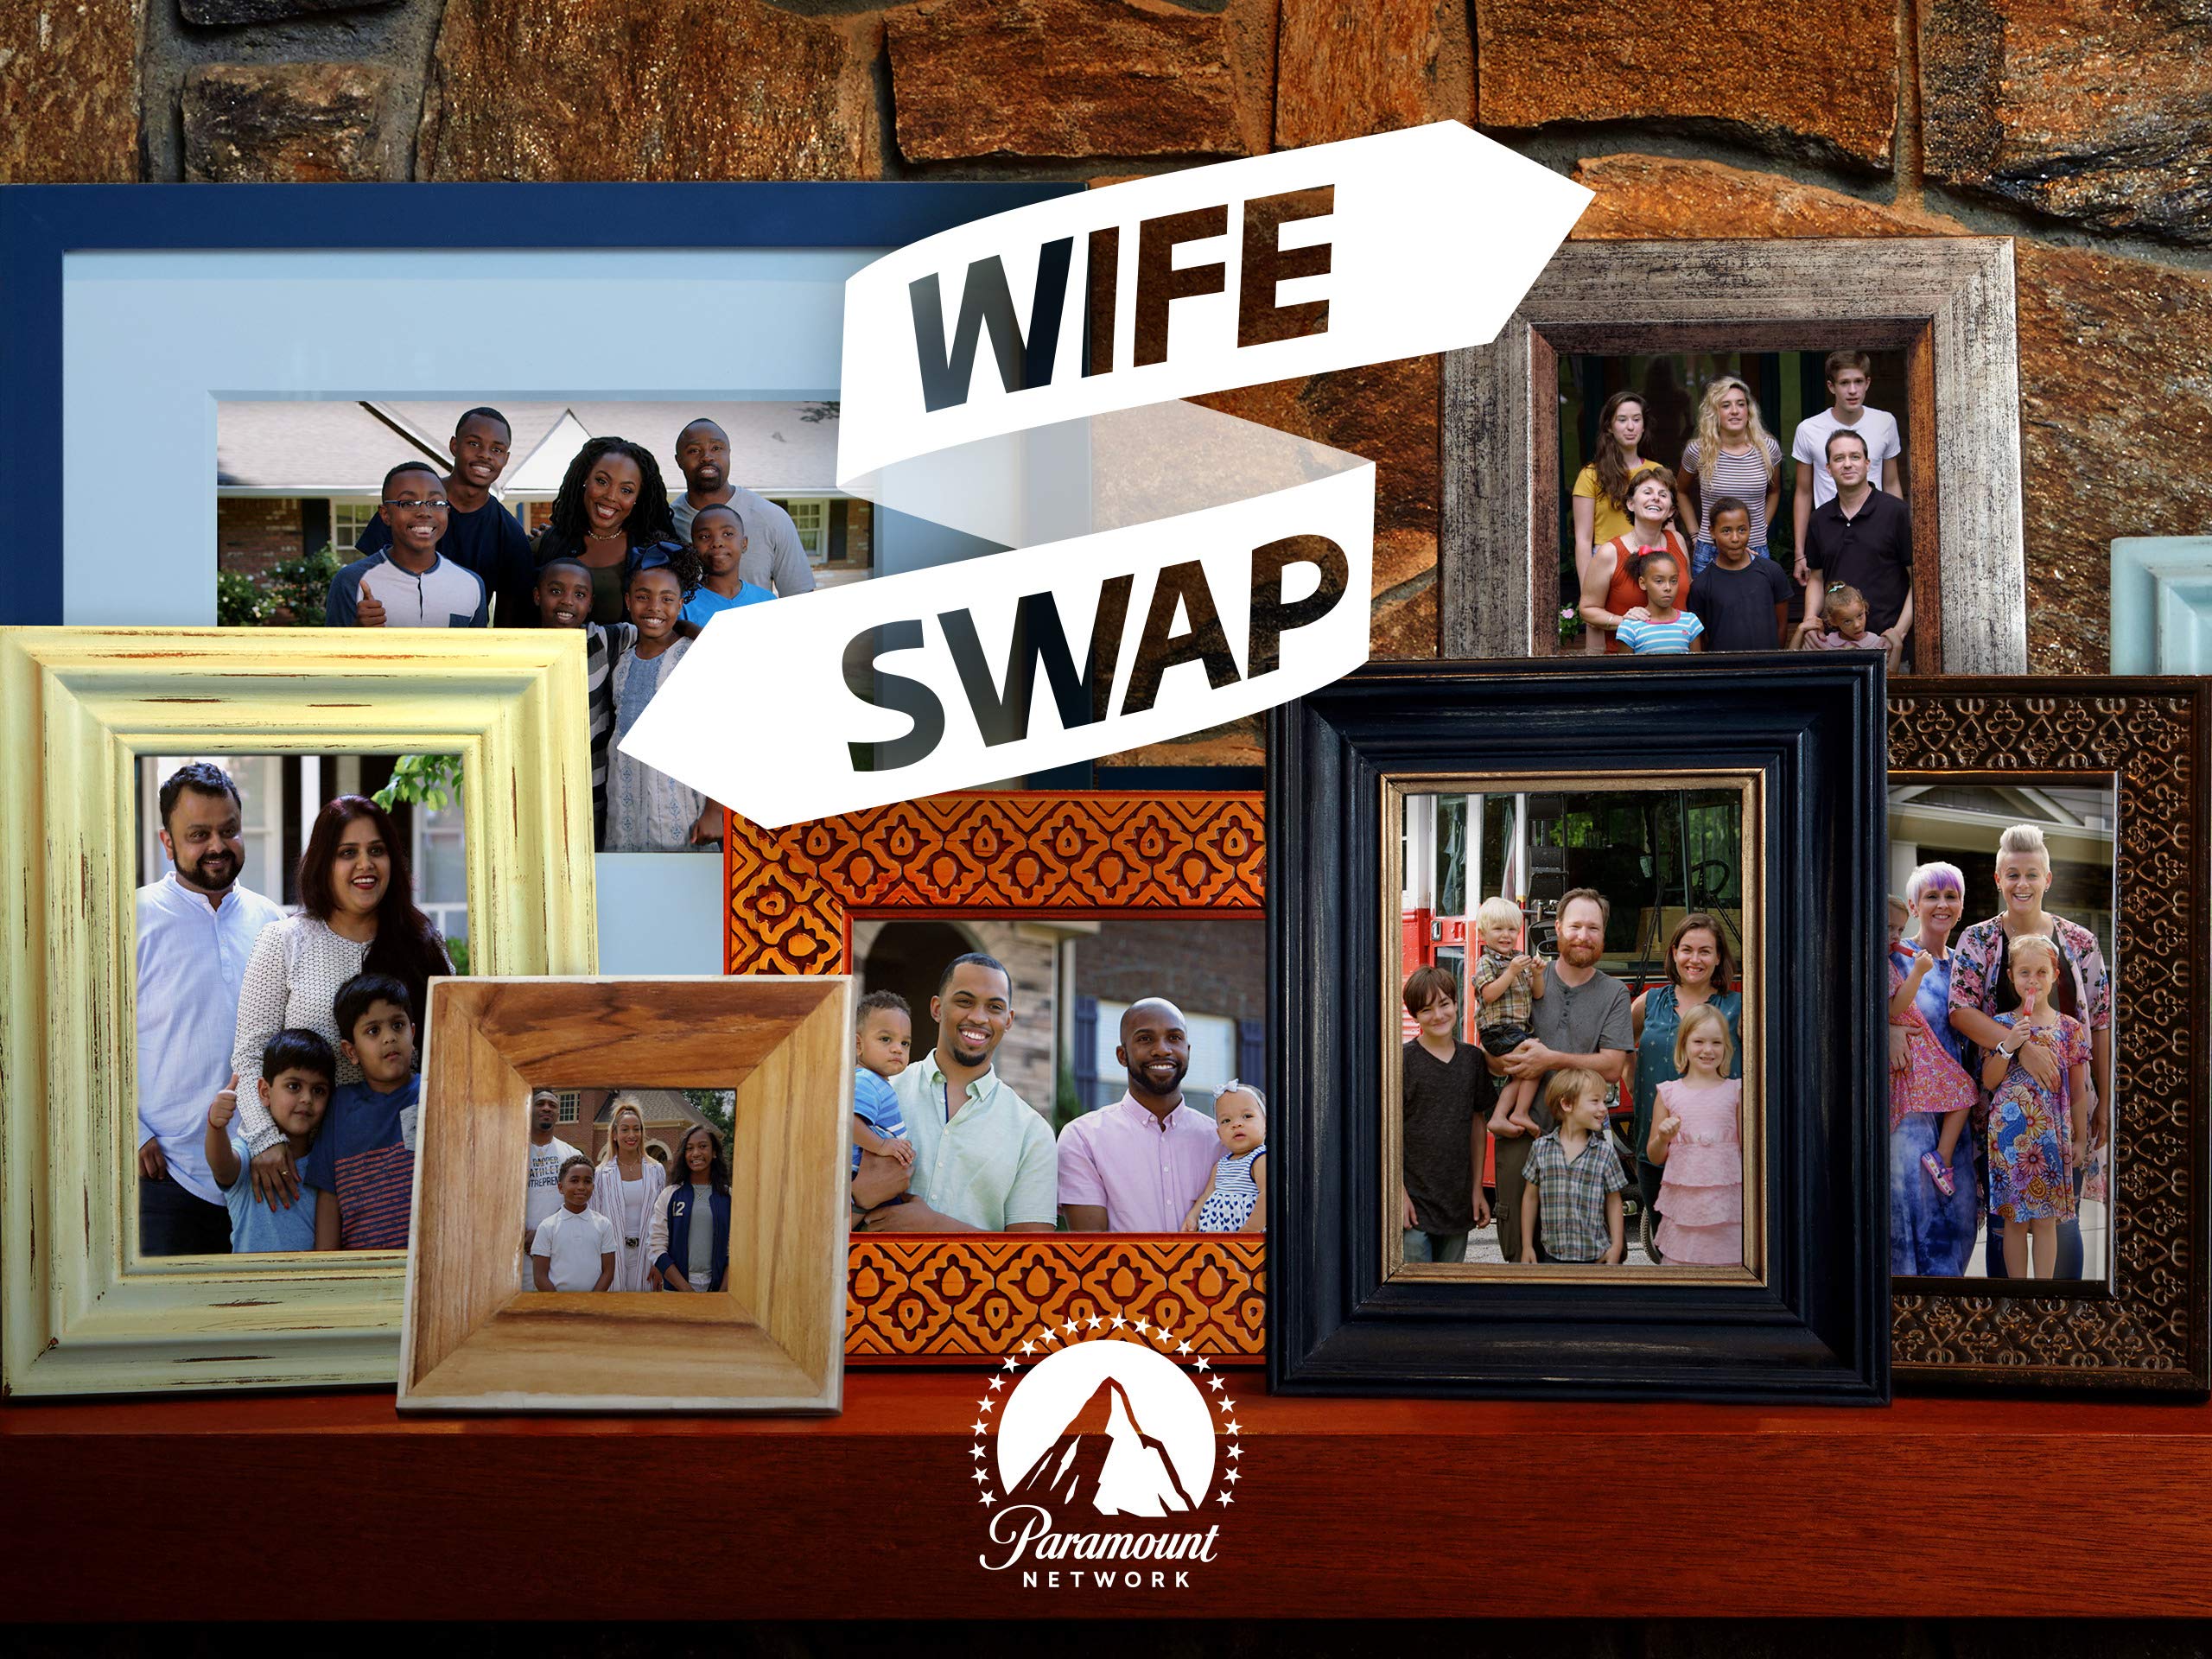 Best of Wife swap season 1 episode 1